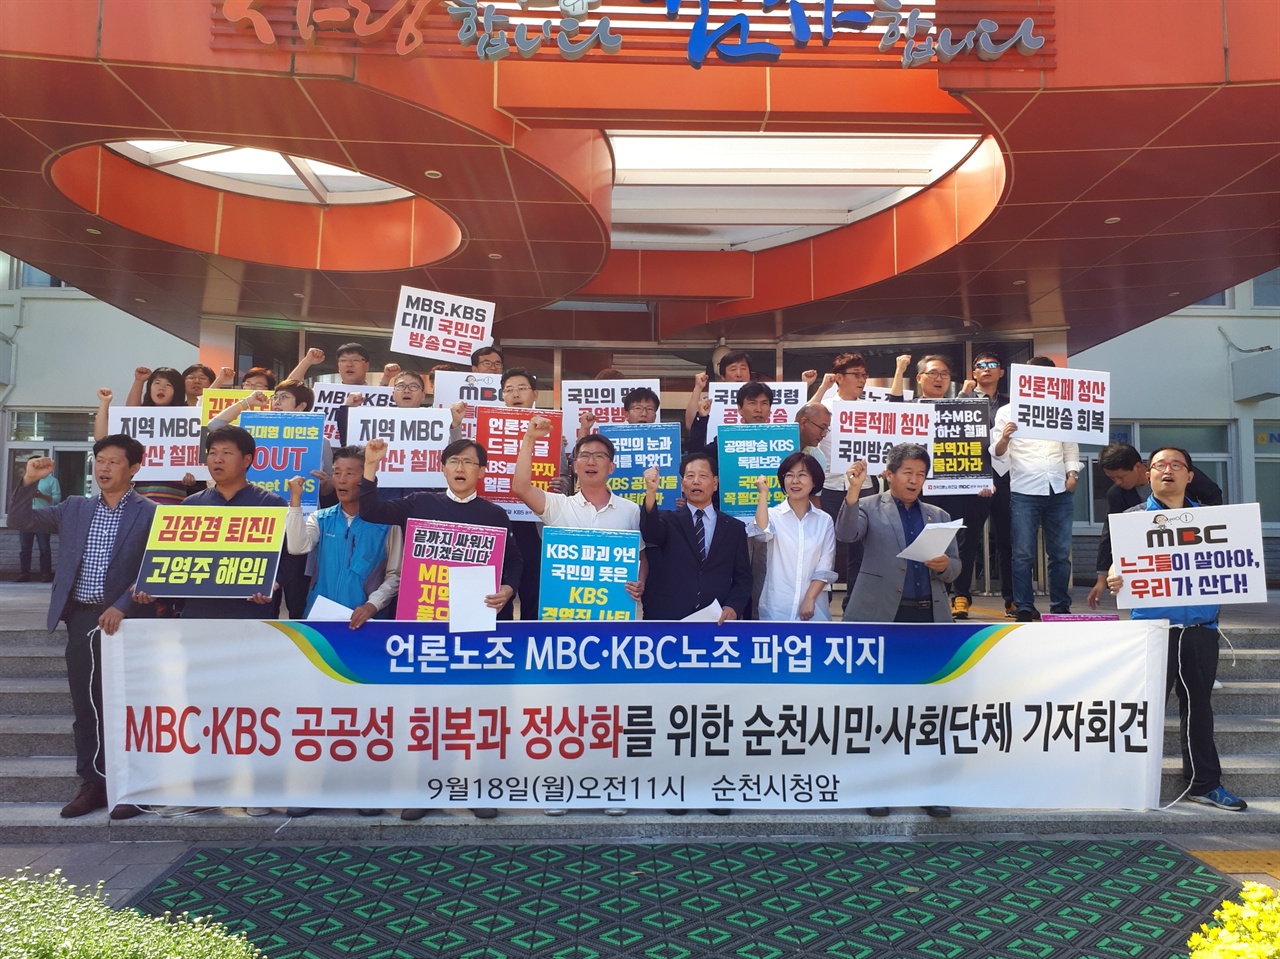 18일 오전 11시 순천시청 앞에서 순천의 시민단체들이 MBC와 KBS 공영방송 정상화를 요구하는 기자회견을 가졌다. 